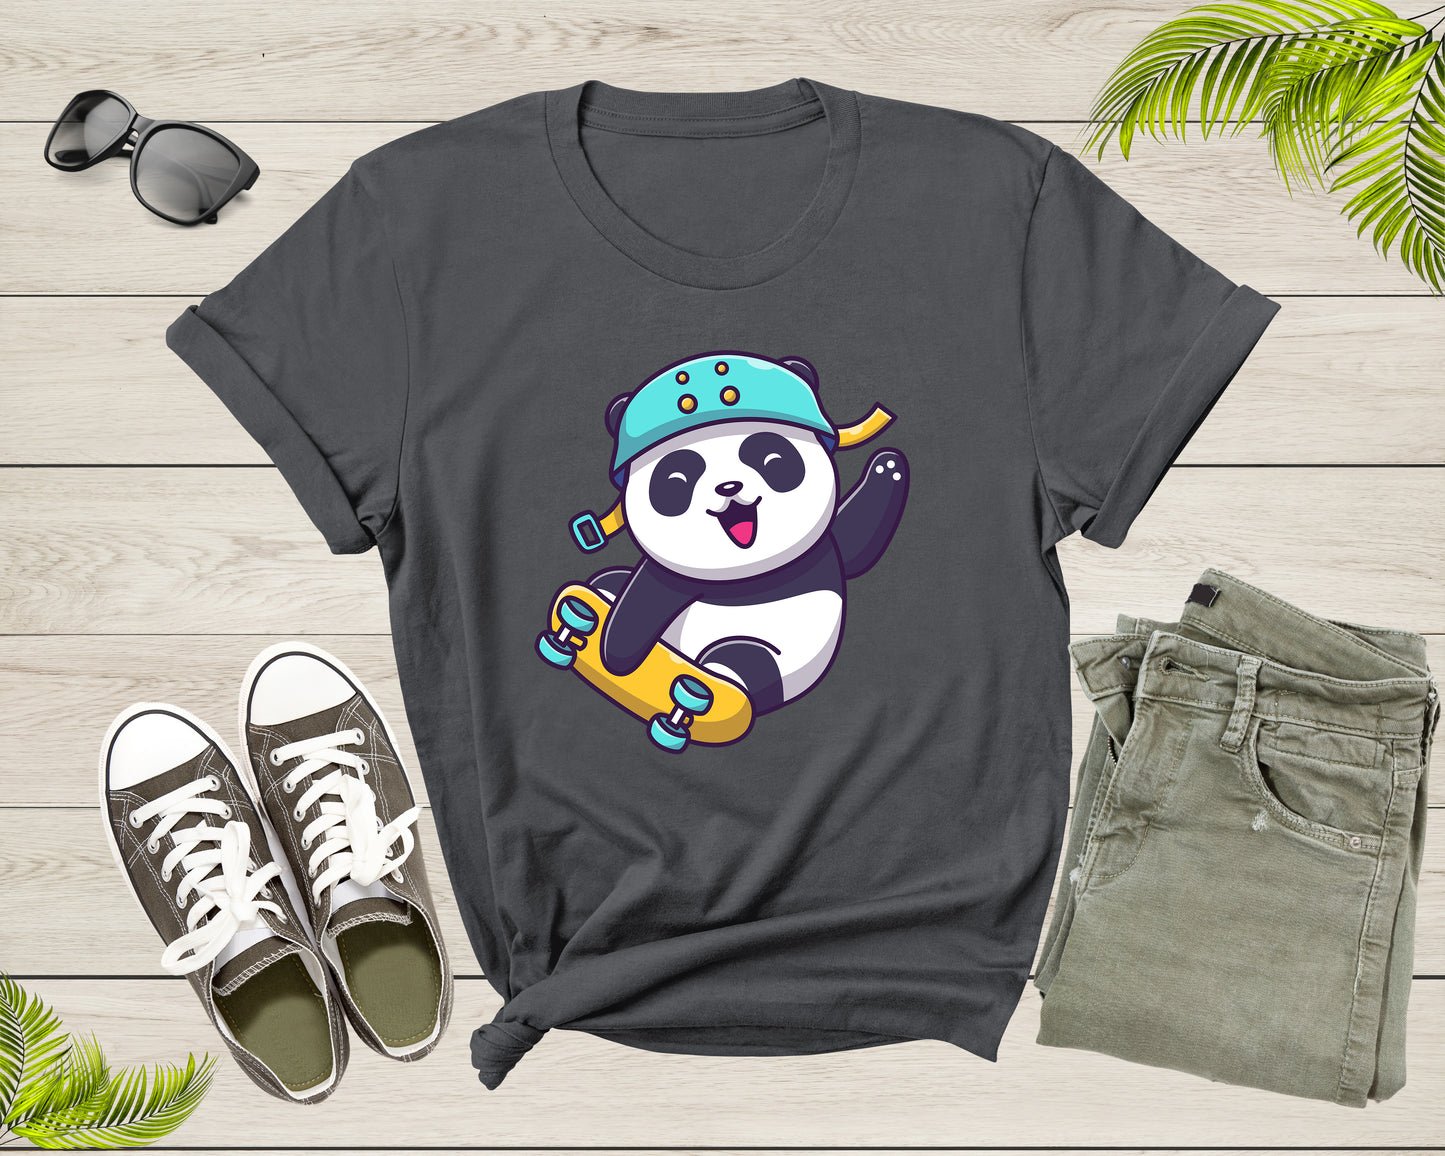 Skateboarding Happy Panda Skateboard Cute Sporty Animal T-Shirt Panda Skateboarder Lover Gift T Shirt for Men Women Boys Girls Tshirt